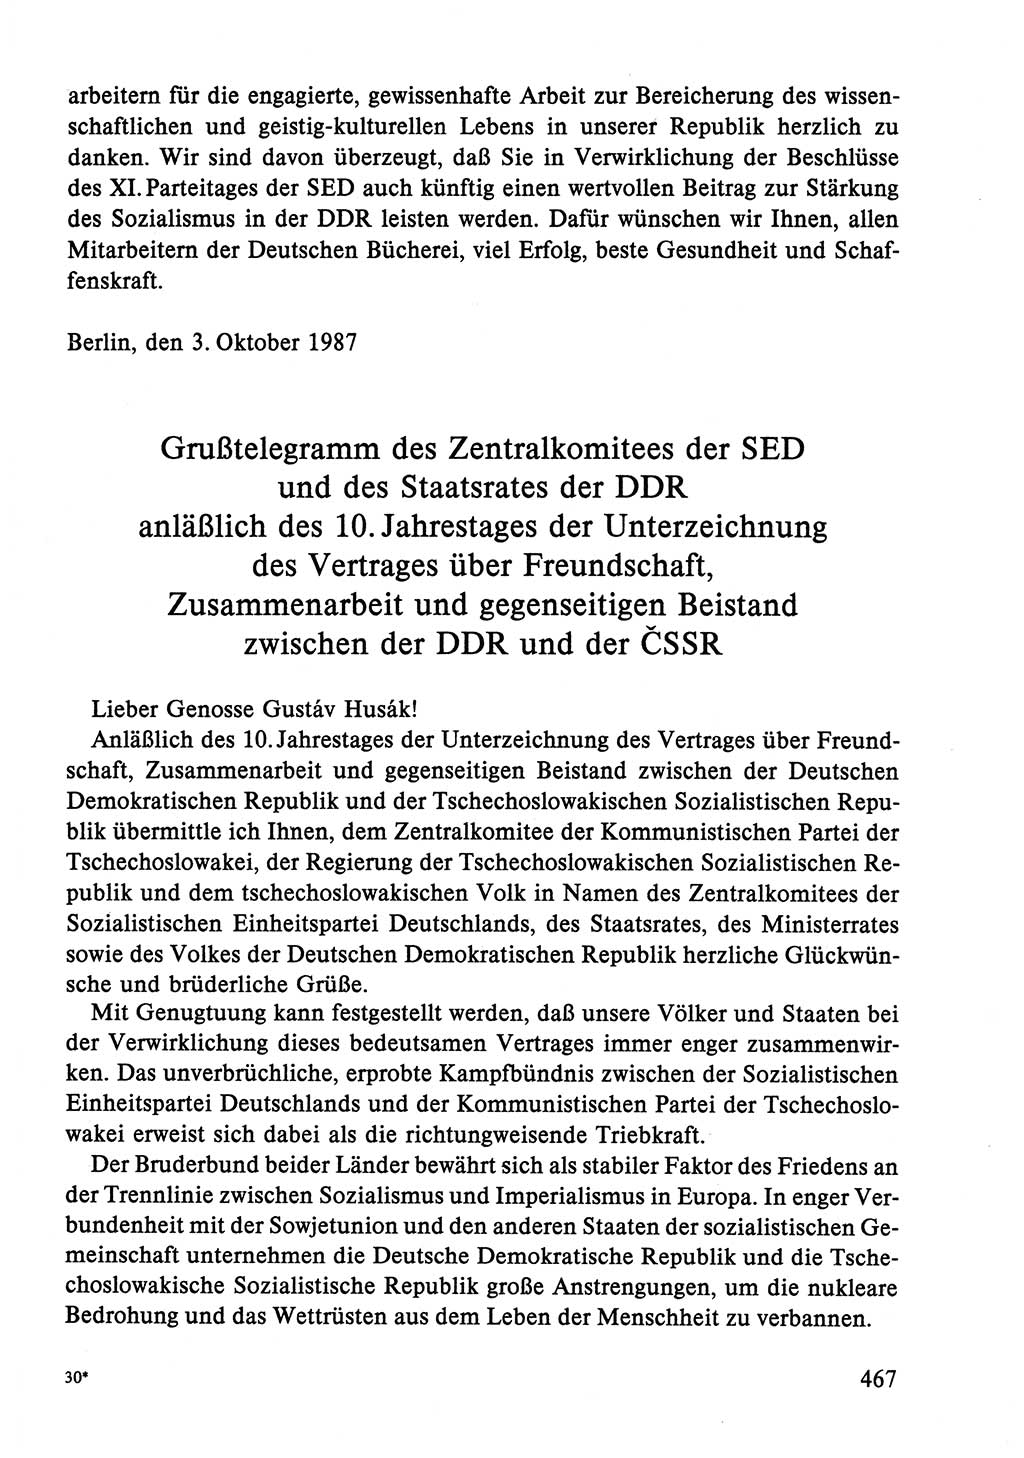 Dokumente der Sozialistischen Einheitspartei Deutschlands (SED) [Deutsche Demokratische Republik (DDR)] 1986-1987, Seite 467 (Dok. SED DDR 1986-1987, S. 467)